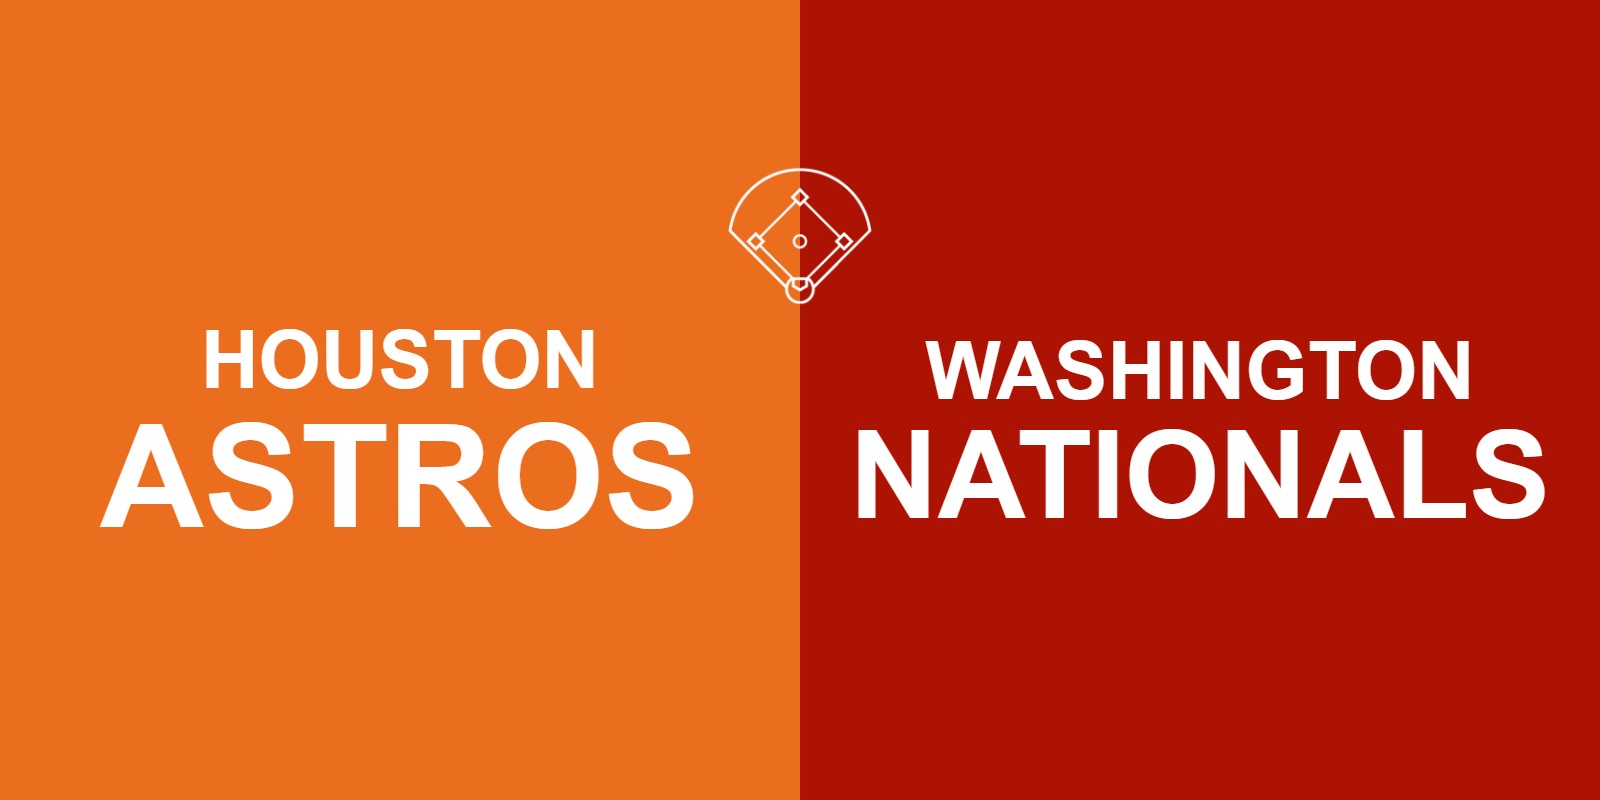 Astros vs Nationals